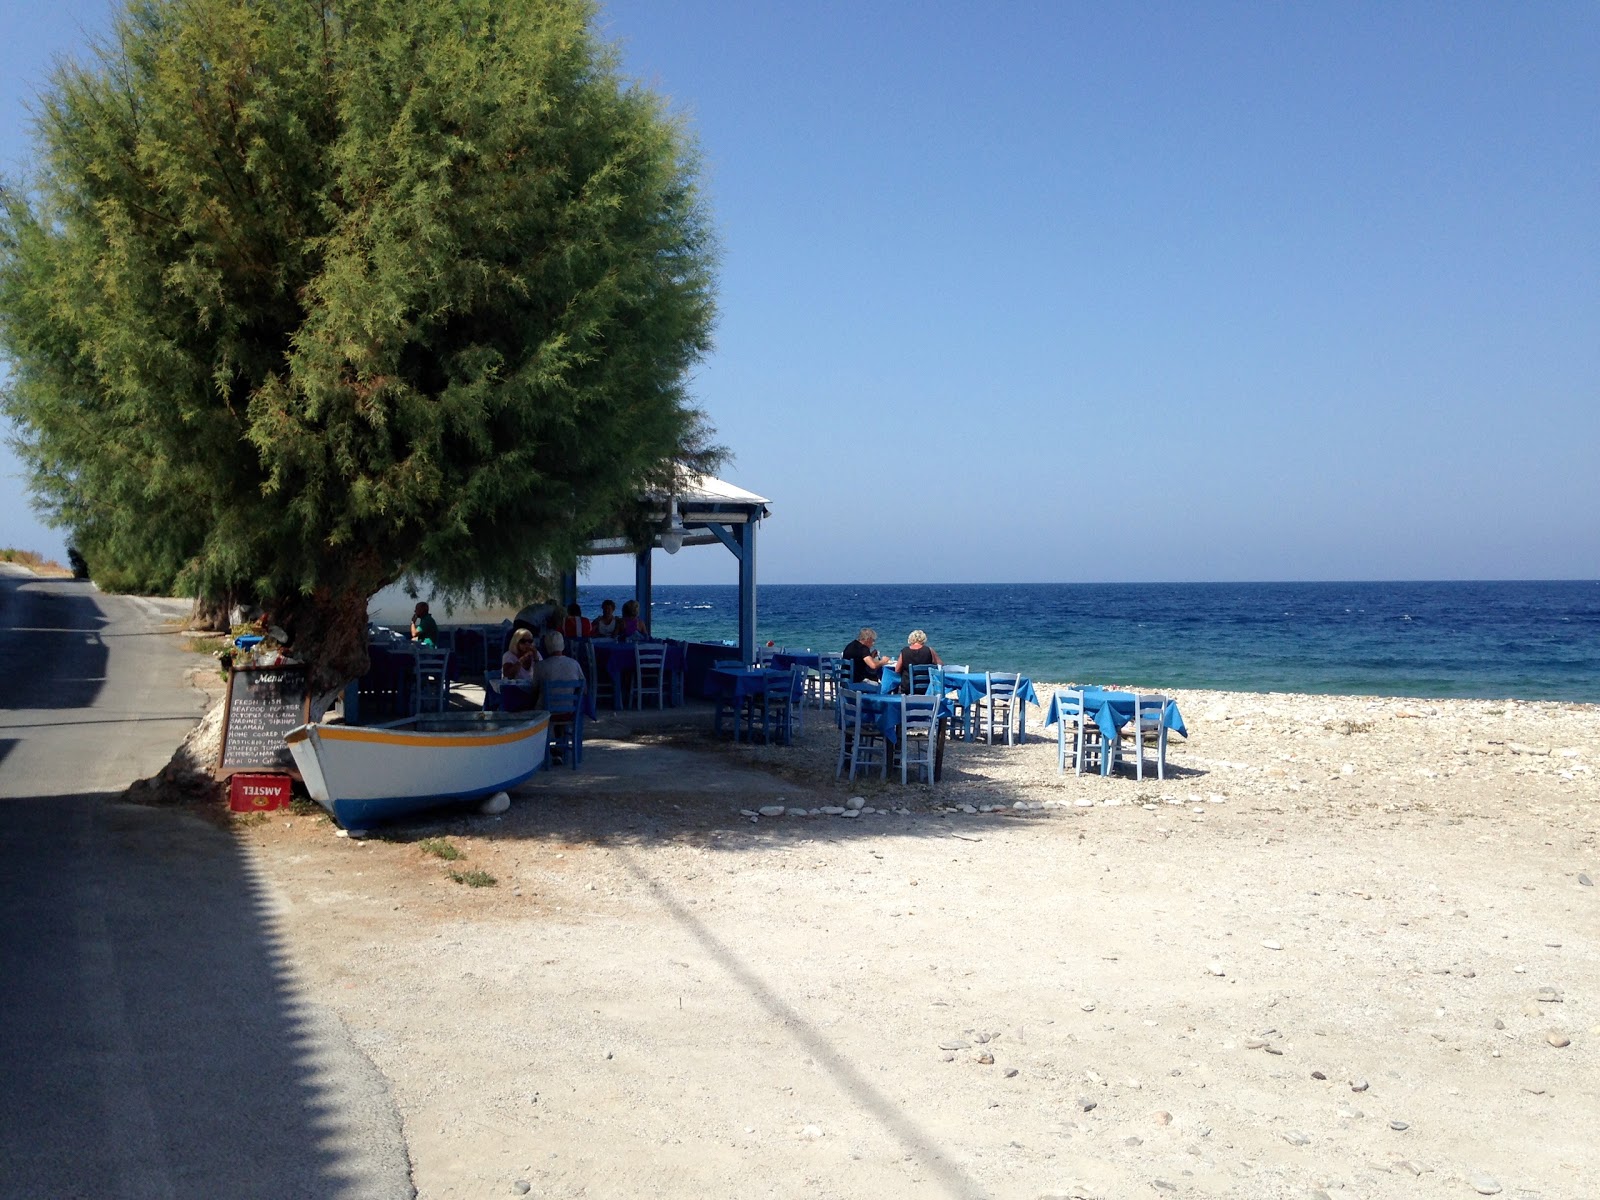 Agios Konstantinos'in fotoğrafı doğrudan plaj ile birlikte